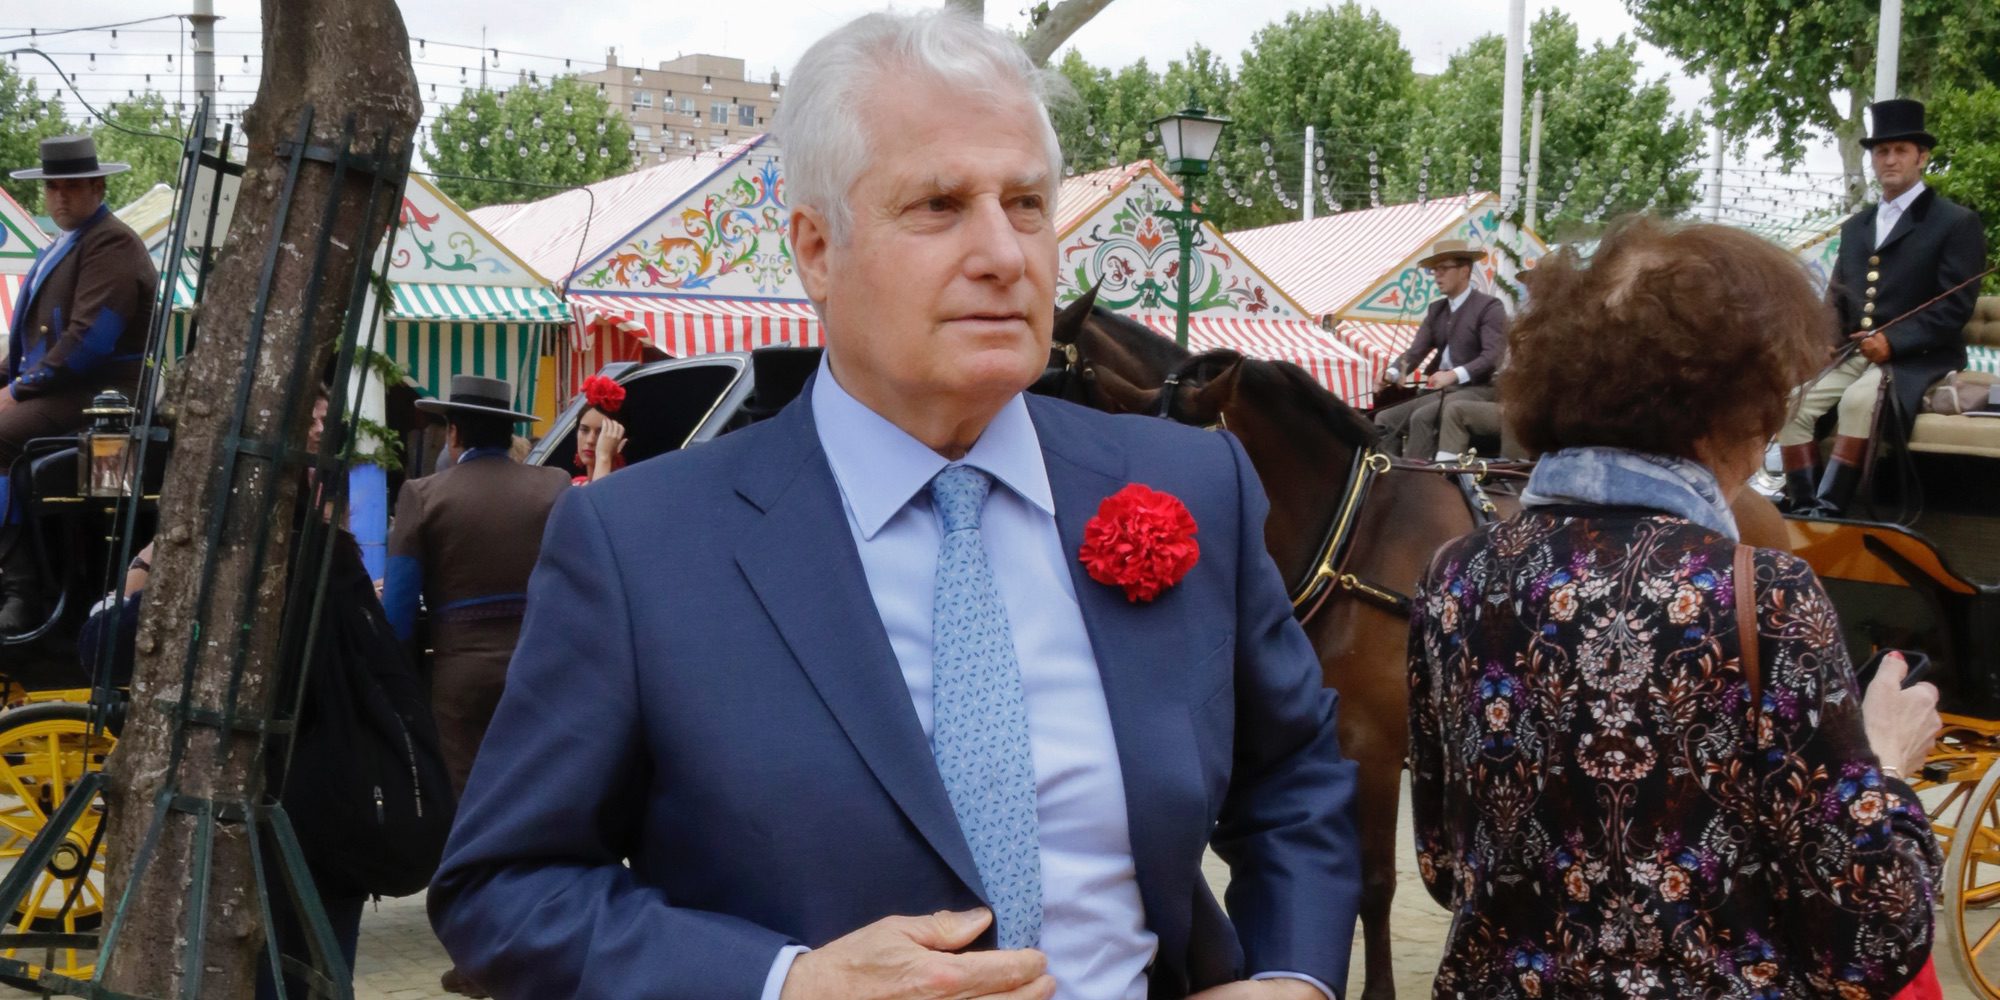 El Duque de Alba disfruta de la Feria de Abril acompañado de una atractiva italiana